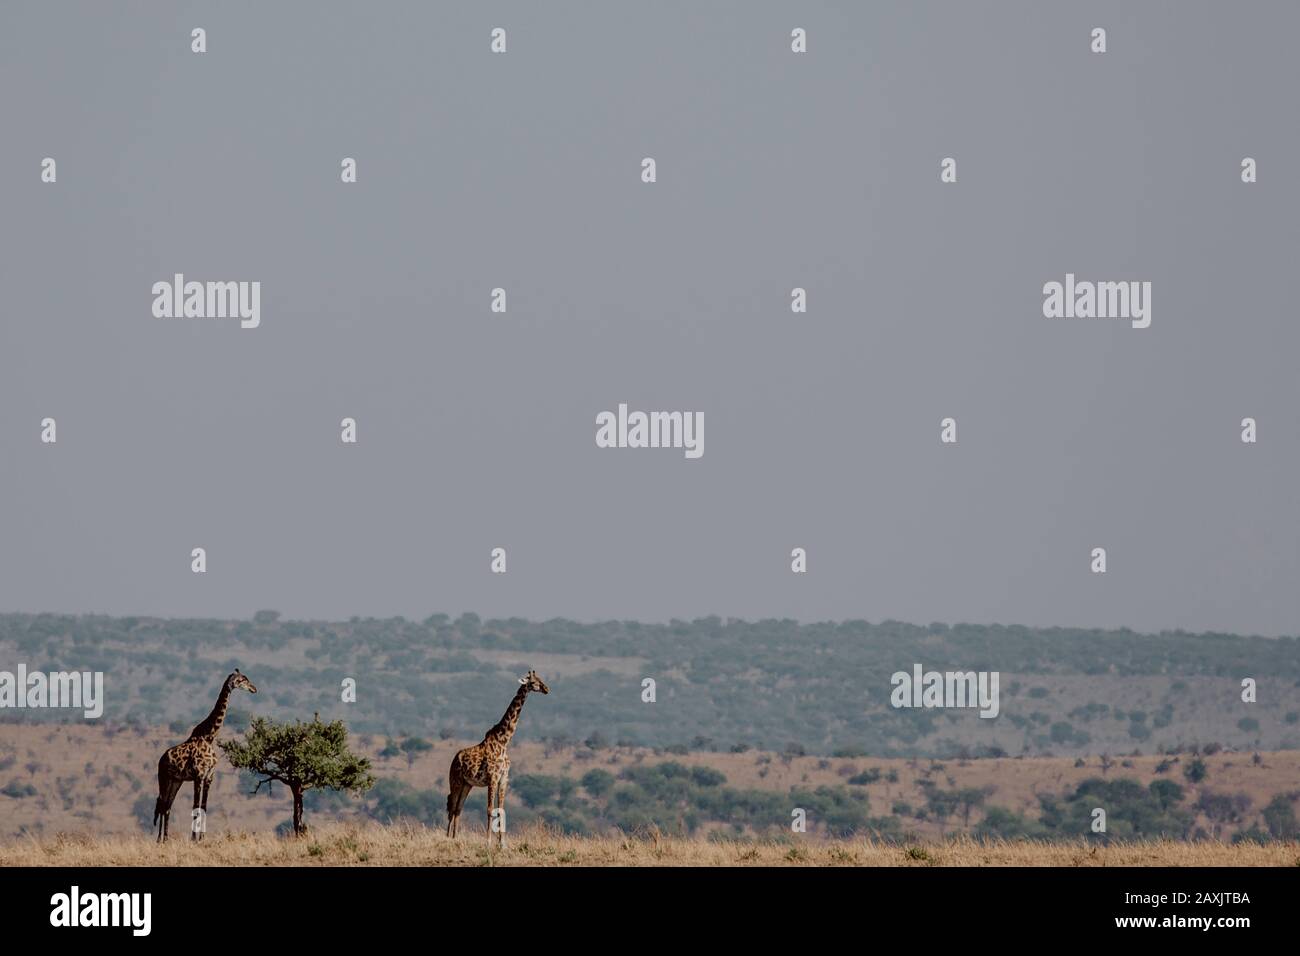 Due giraffe in piedi accanto ad un piccolo albero nella savana in basso a sinistra della foto, Serengeti National Park, Tanzania Foto Stock